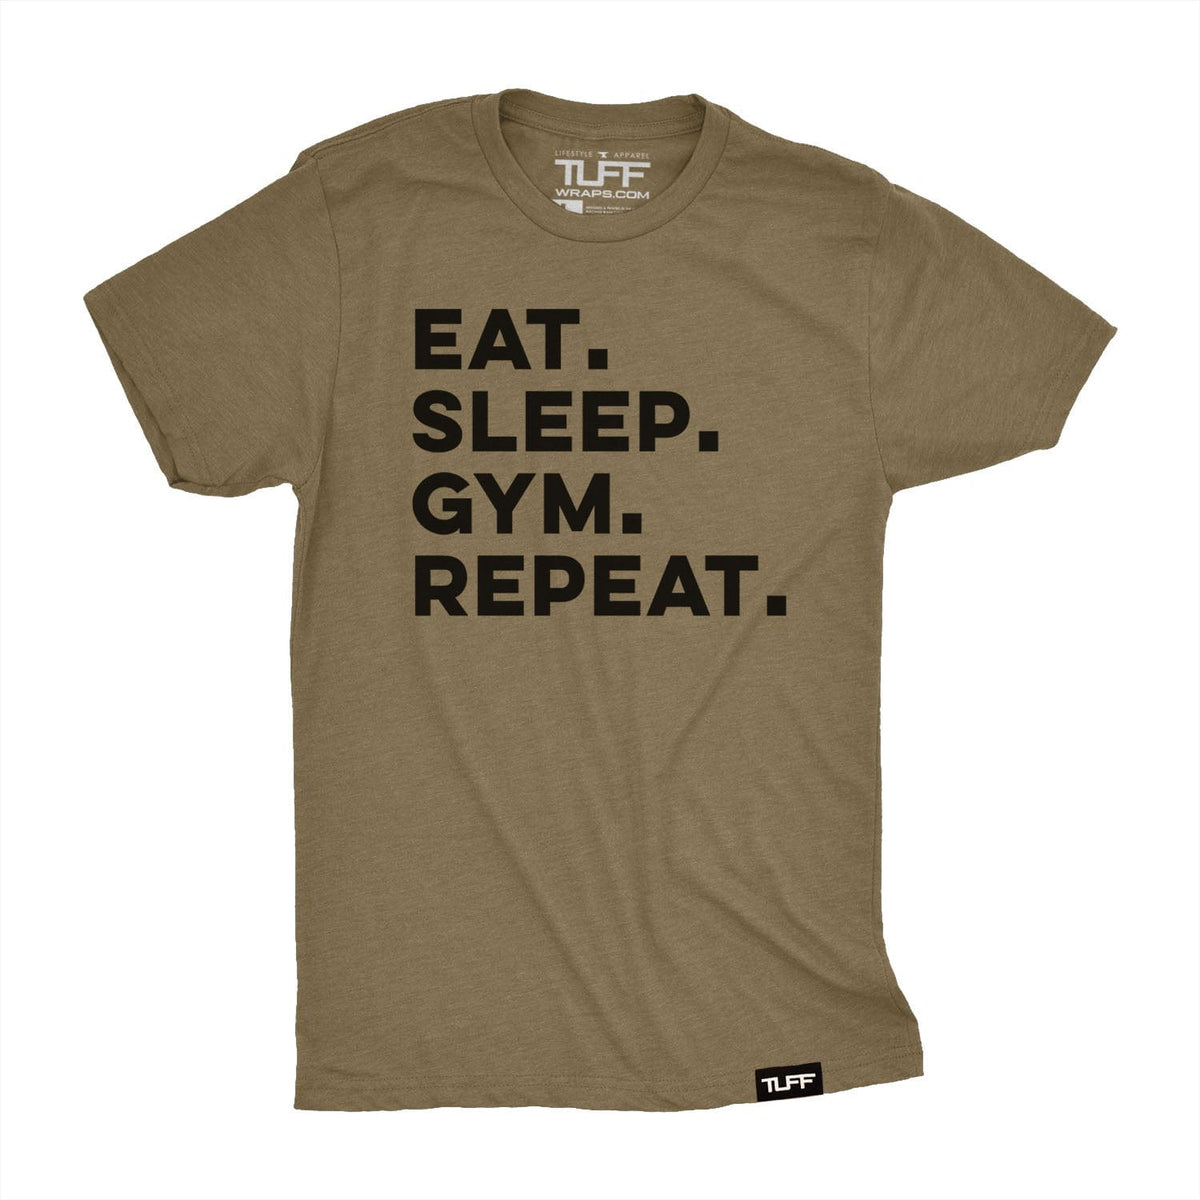 Eat. Sleep. Gym. Repeat. Tee S / Military Green TuffWraps.com